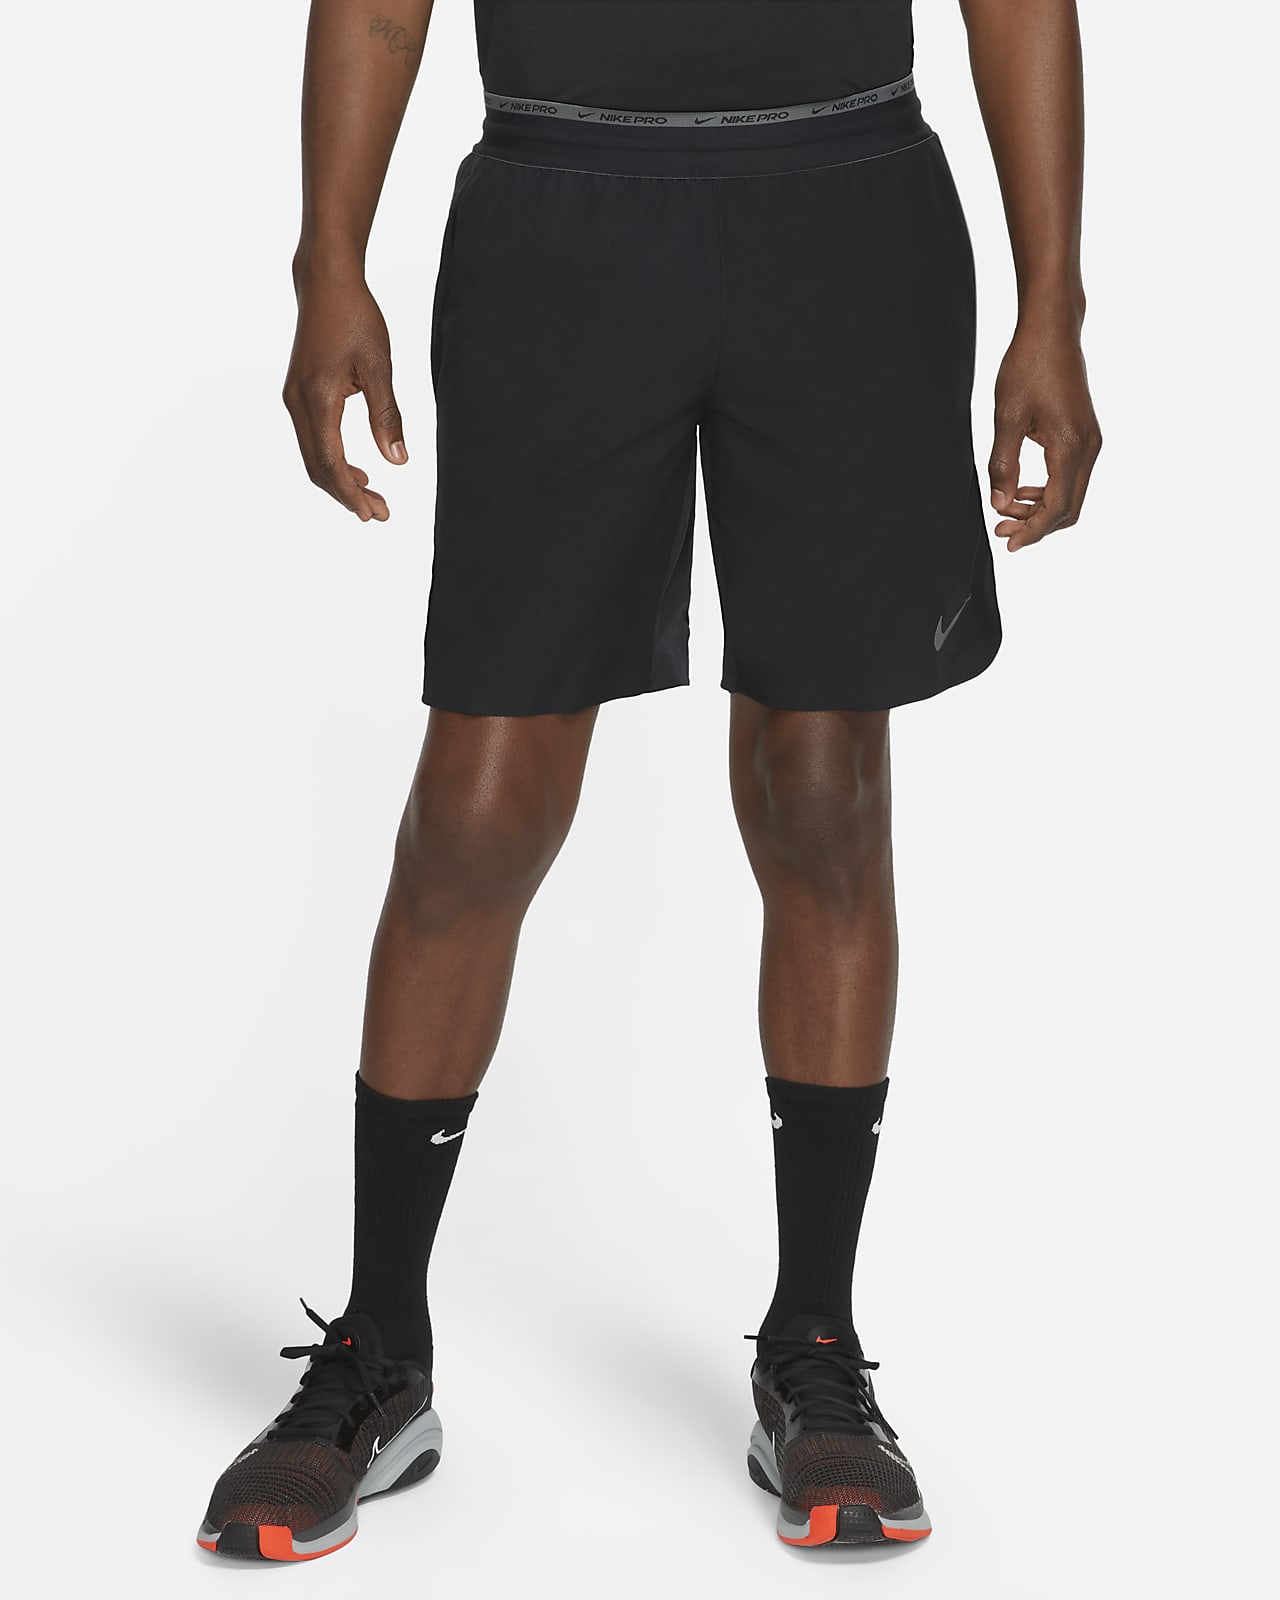 Nike Dri-FIT Flex Rep Pro Collection 20 cm-es, bélés nélküli férfi edzőrövidnadrág